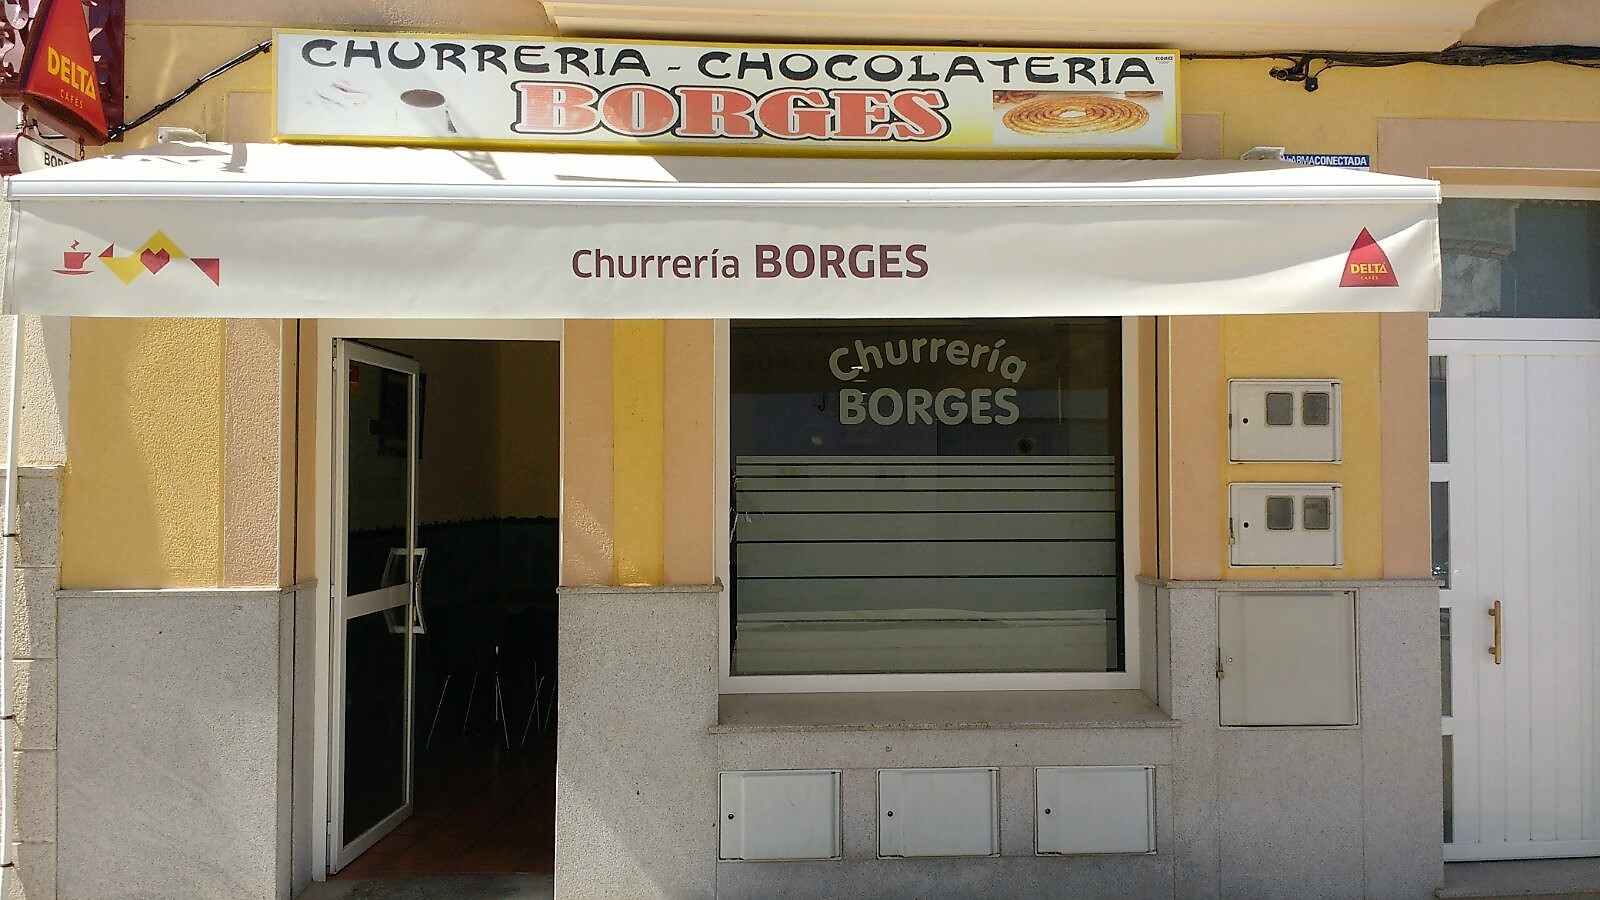 CHURRERIAS Y CHOCOLATERIA BORGES